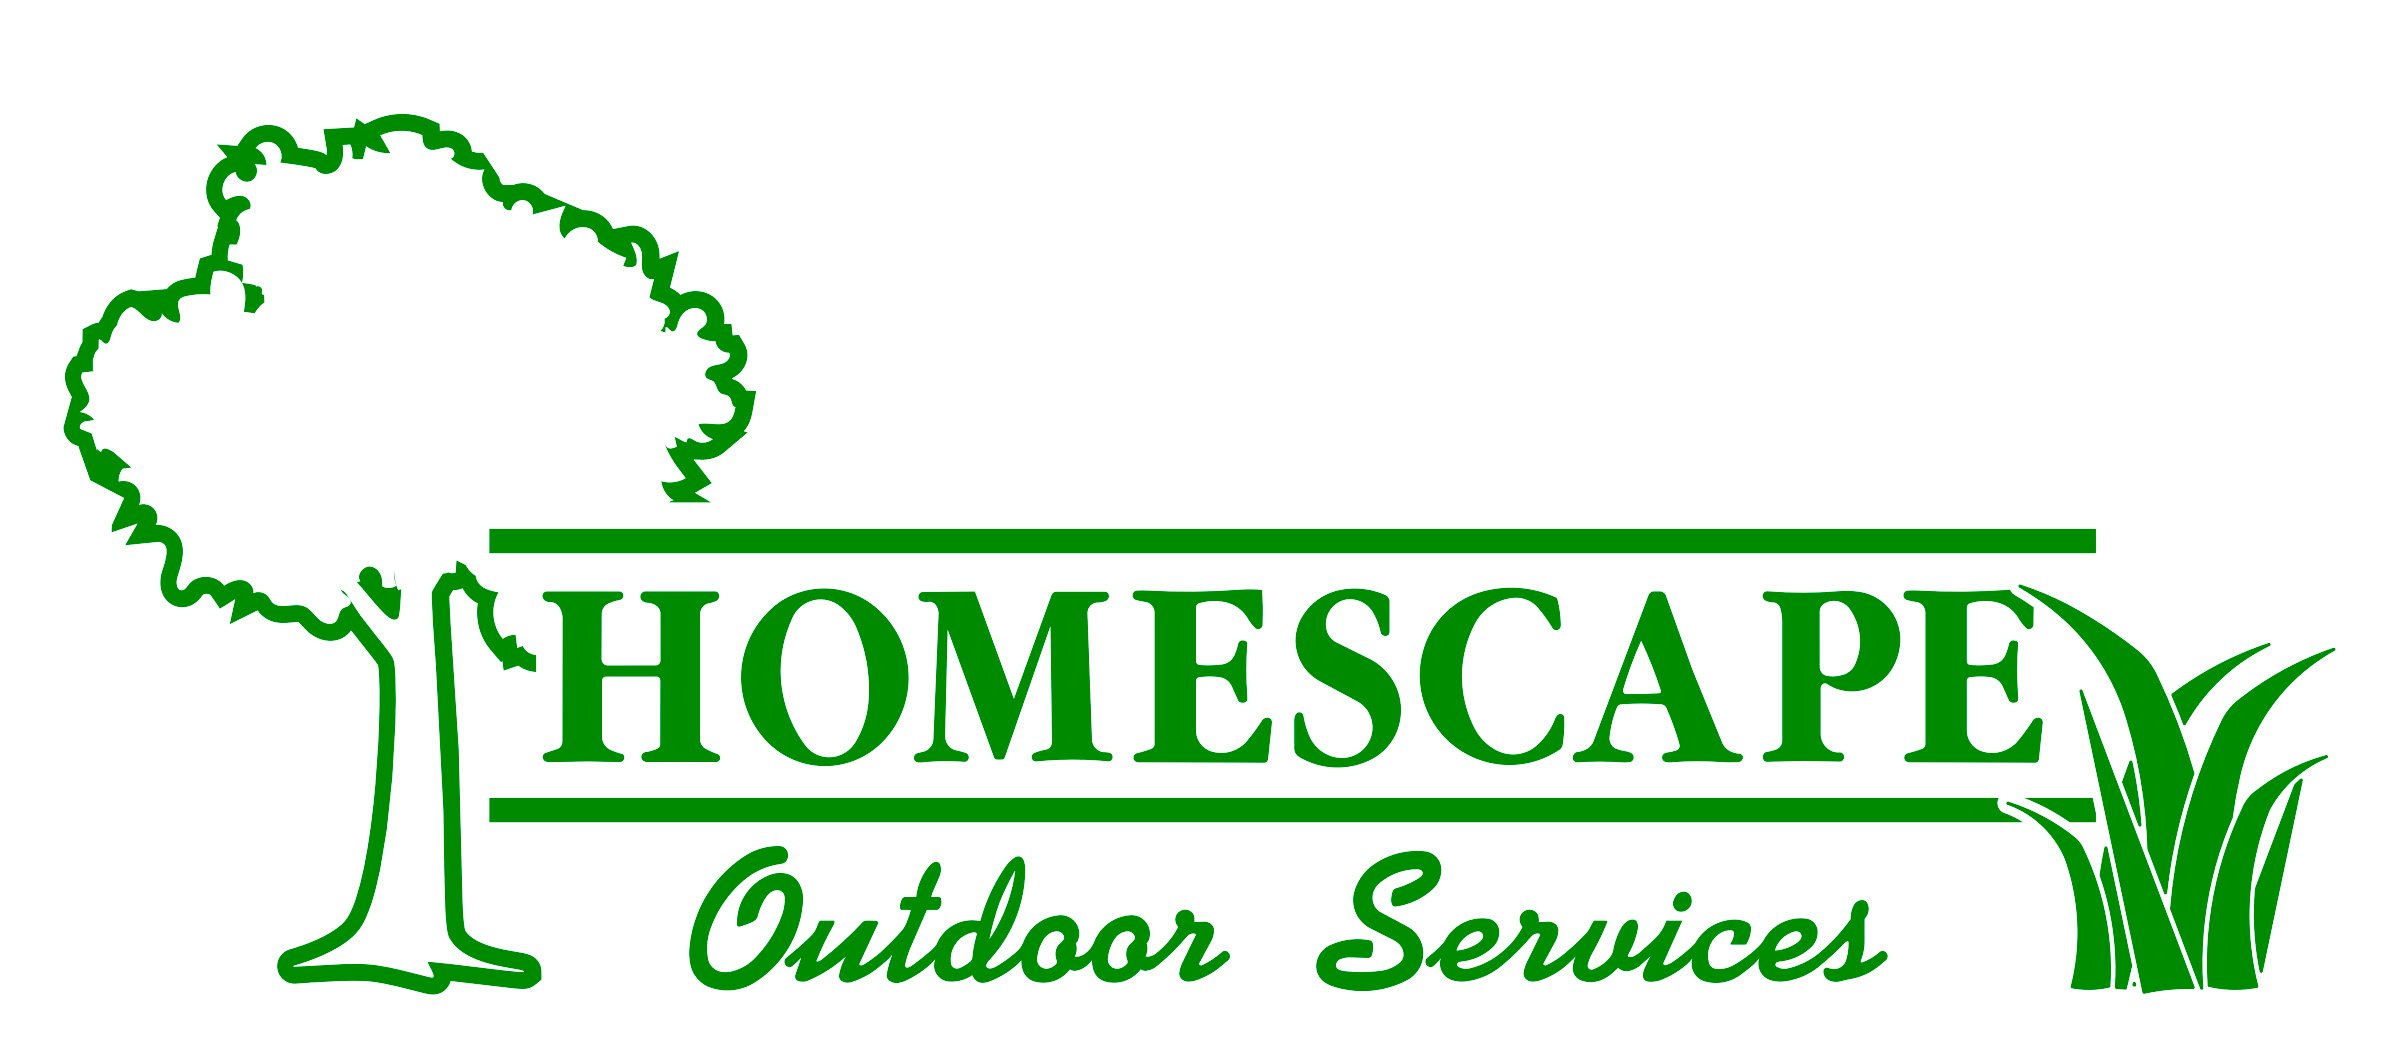 Homescape Outdoor Services, LLC Logo